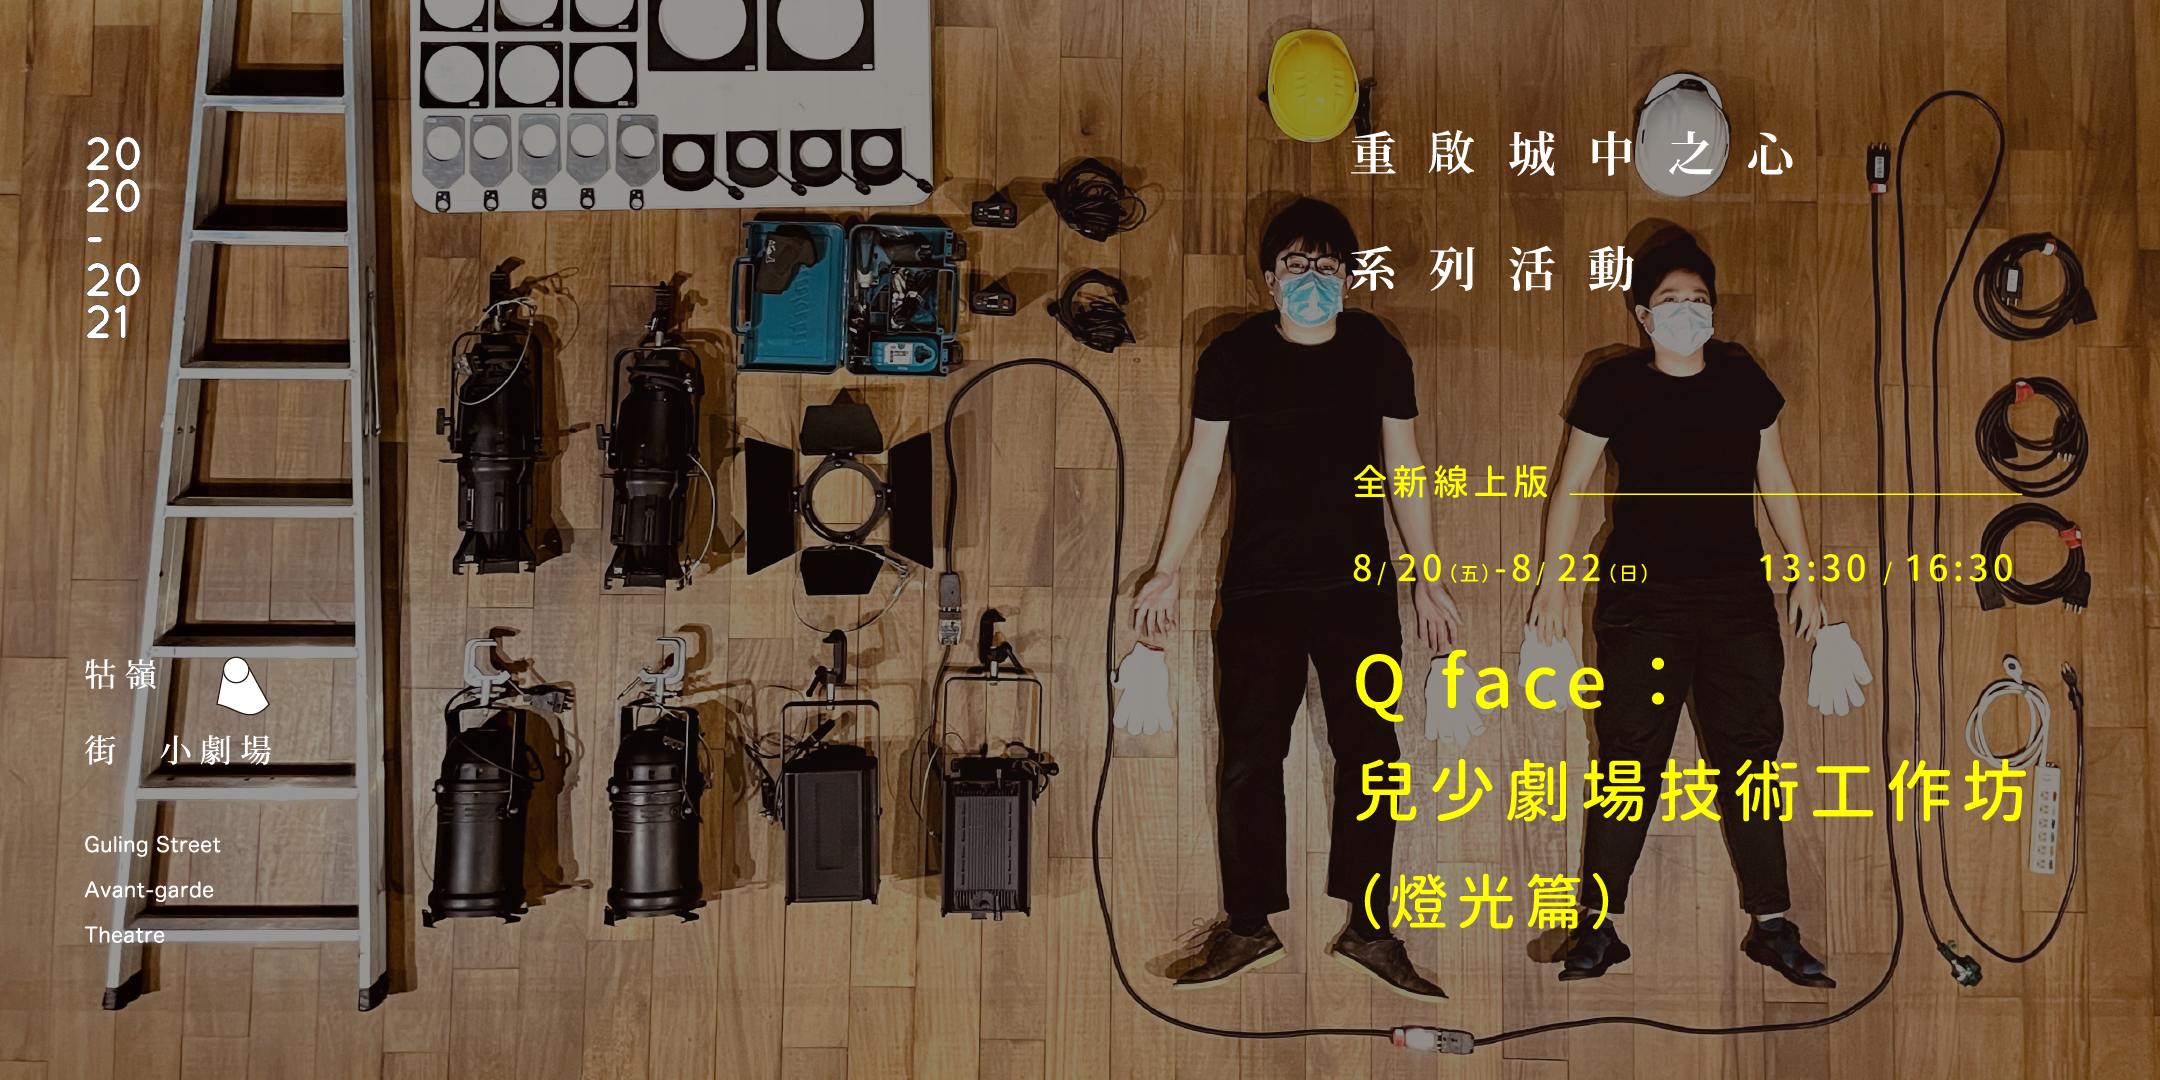 全新線上版【Q face—兒少劇場技術體驗工作坊（燈光篇）】 | 牯嶺街小劇場Guling Street Avant-garde Theatre